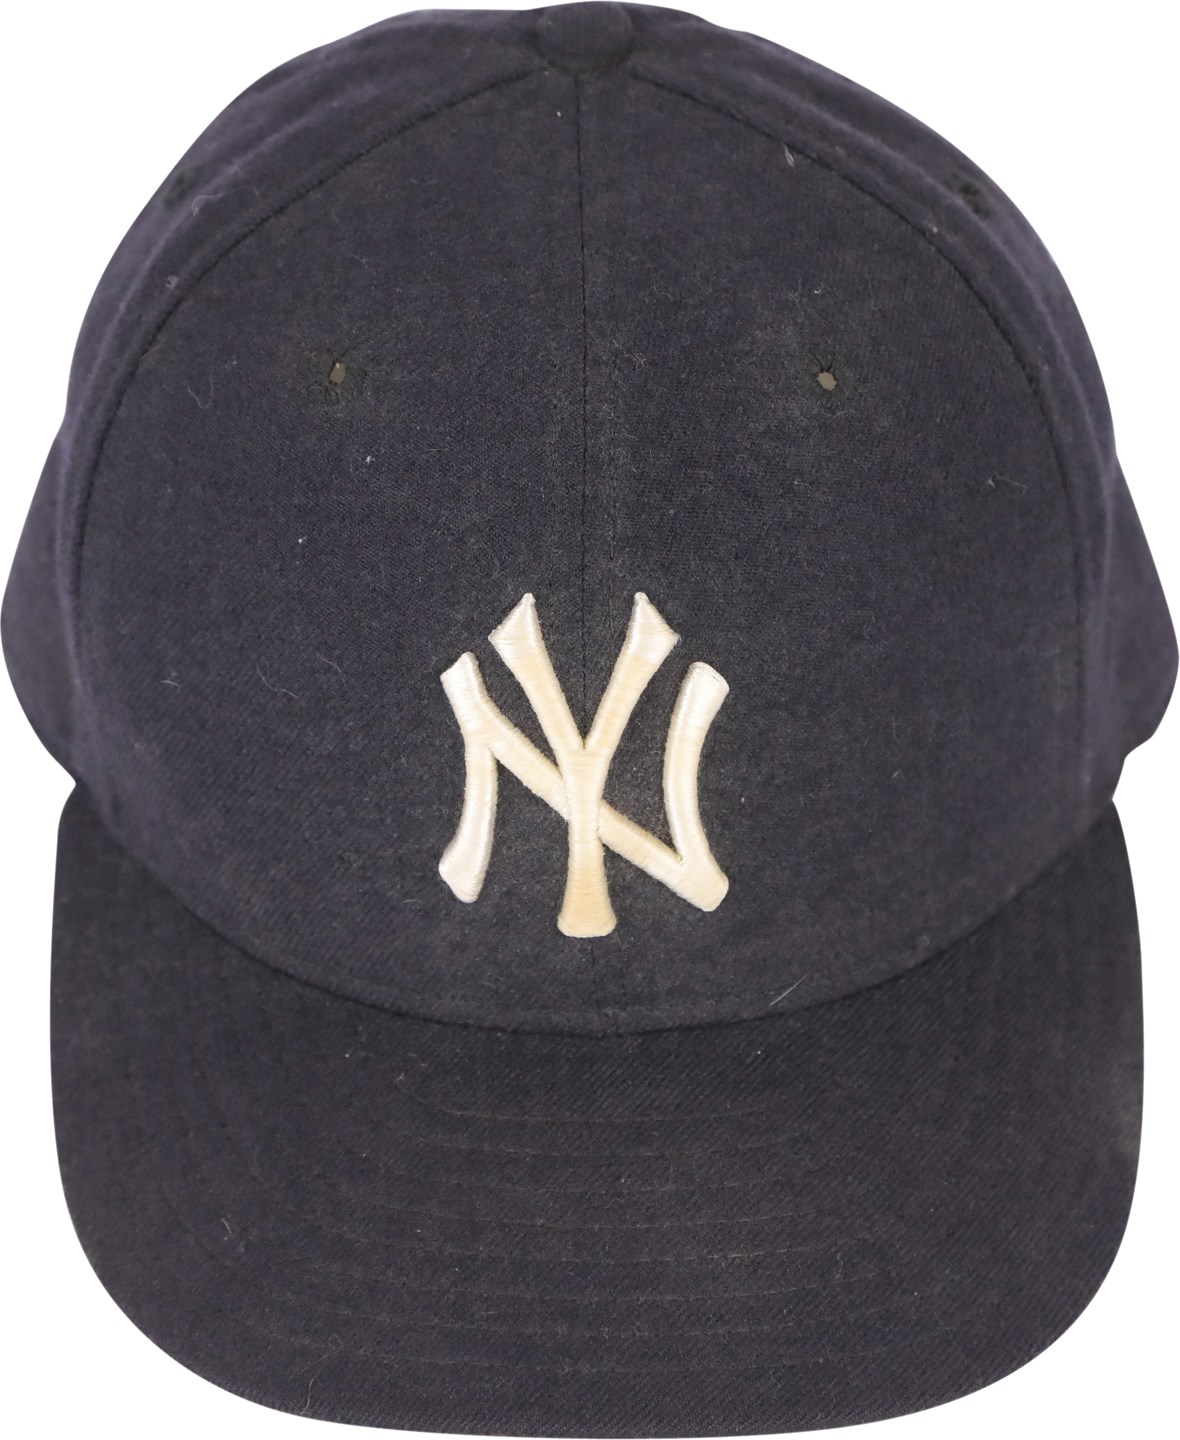 - 1995-96 Derek Jeter New York Yankees Game Used Rookie Era Hat